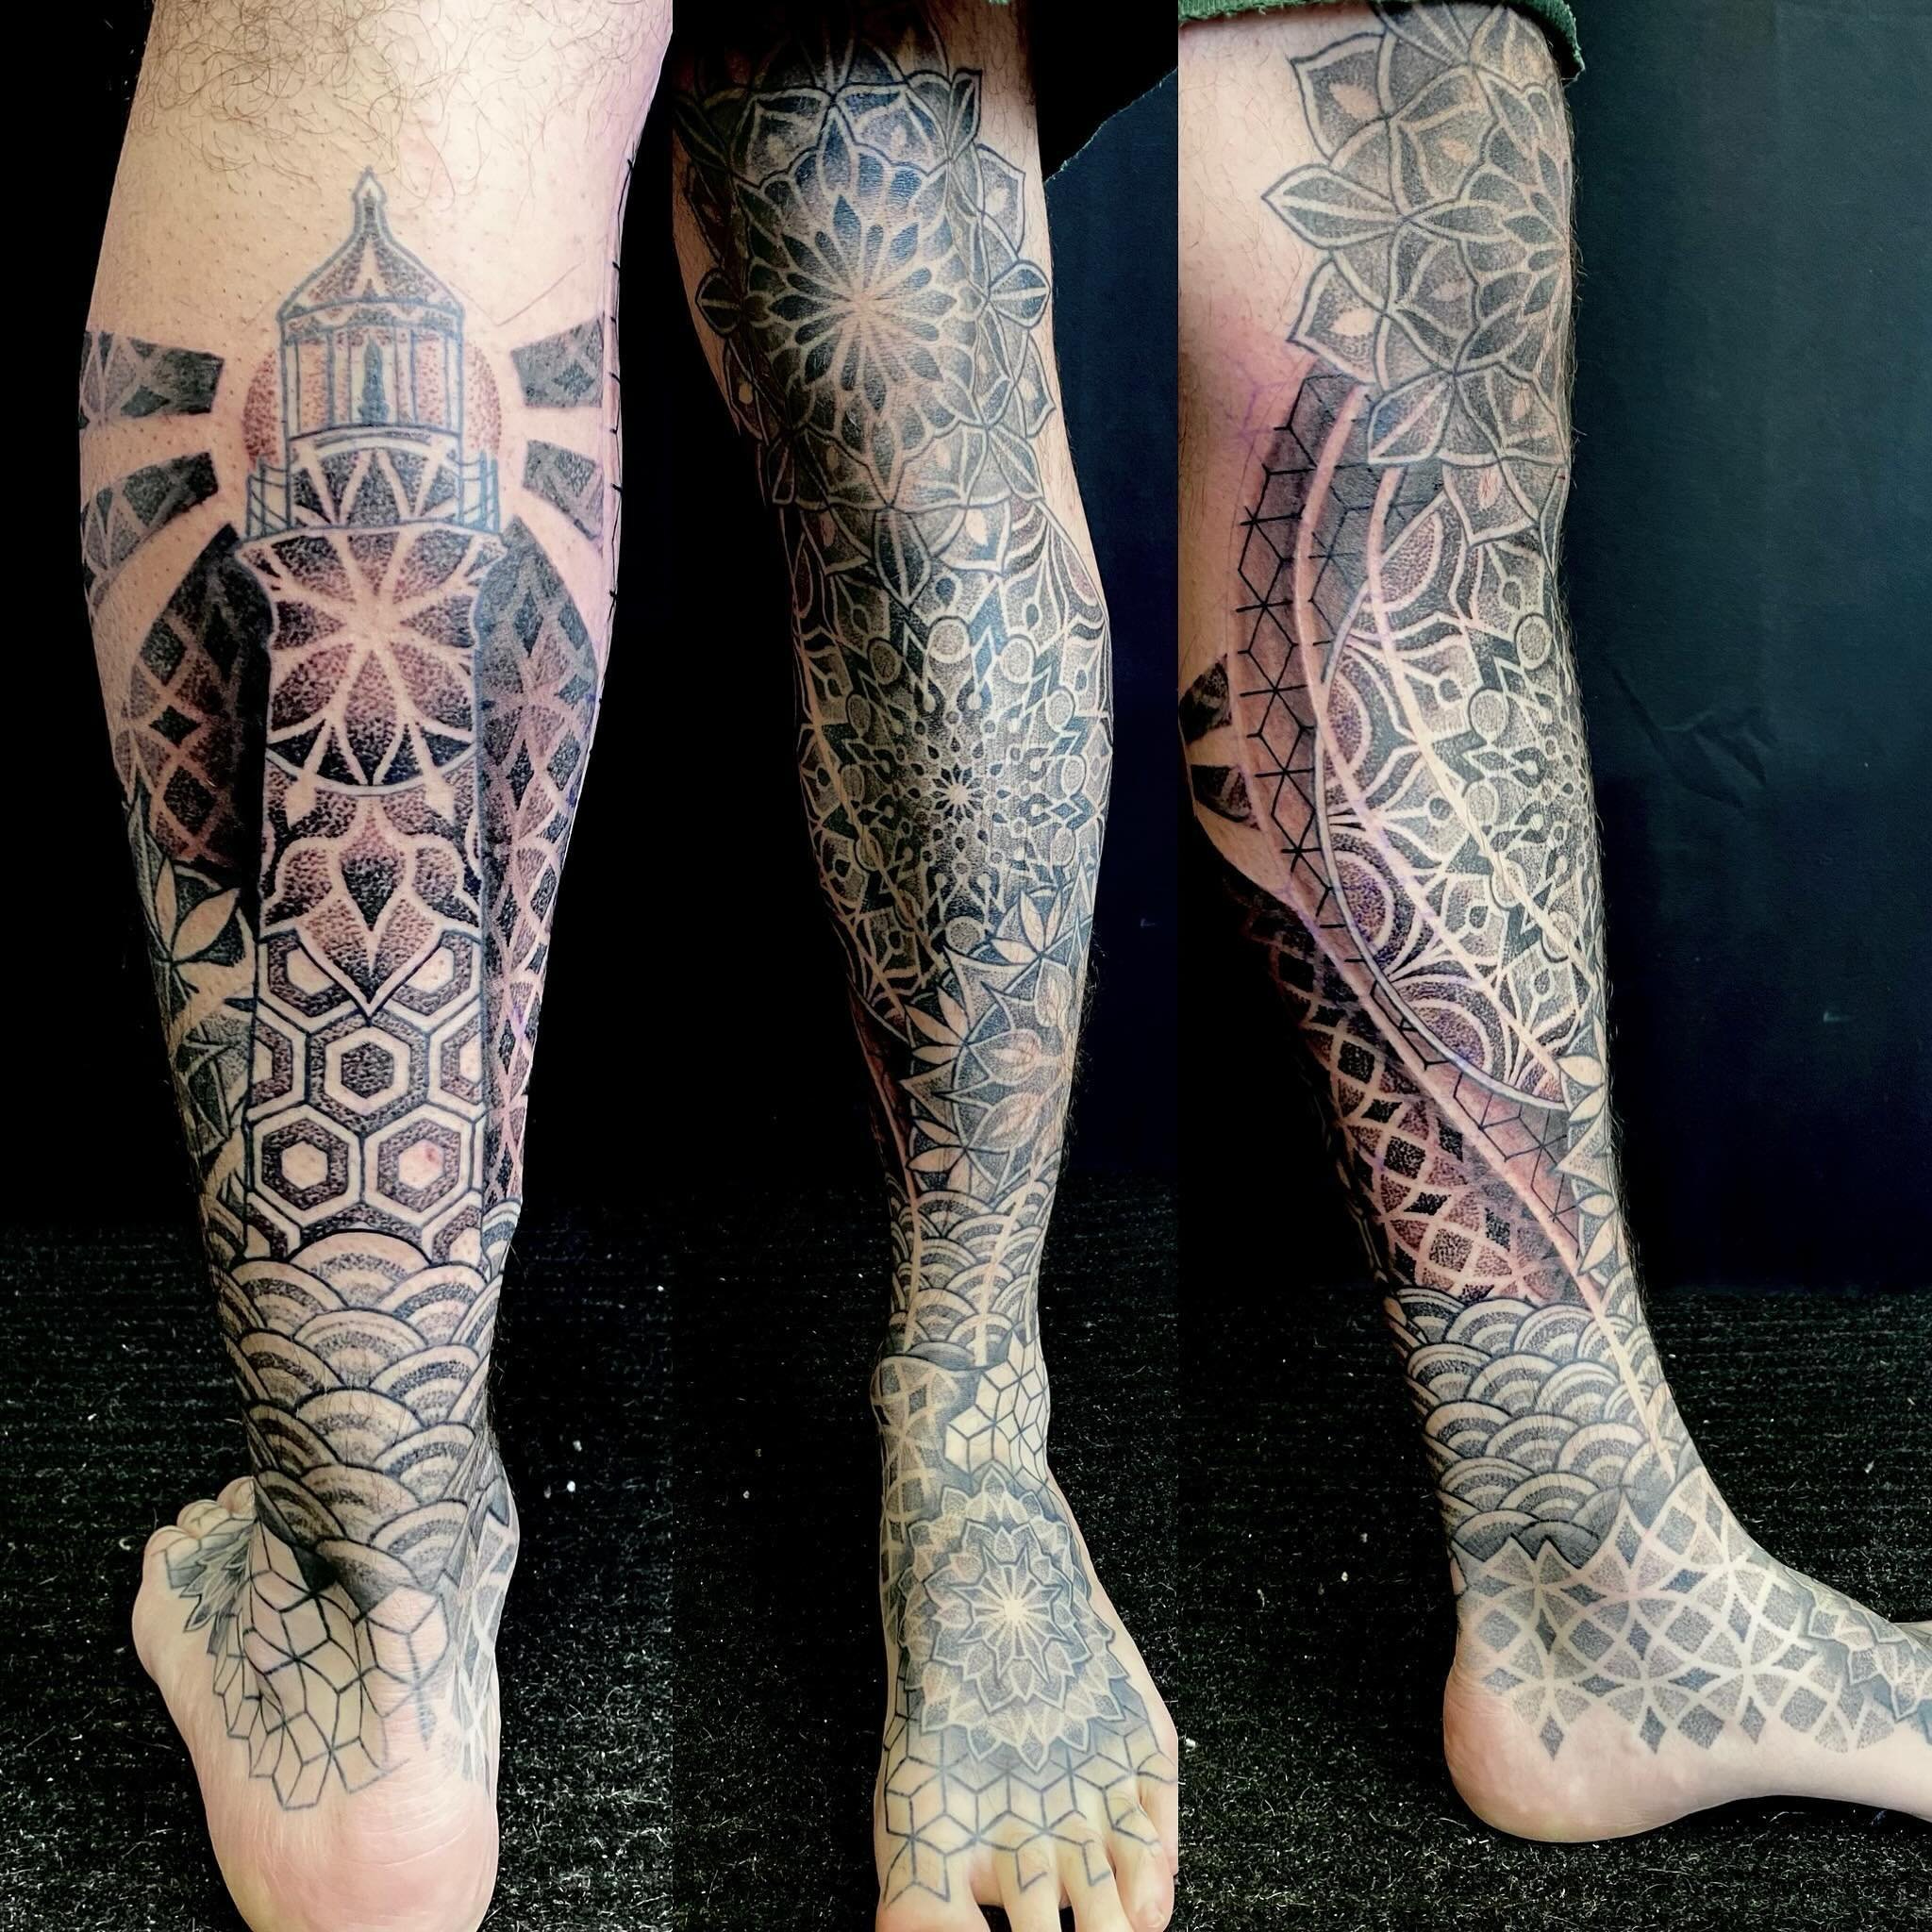 Legsleeve in progress. 
.
.
.
.
.
.
.
.

#tattoo #tattoos #tattooed #tattooartist #cohenfloch  #victoriatattoo #yyjtattoo #vanisletattoo  #vancouvertattoo #tattoodo  #inked #刺青 #tattooworkers #tattoolife